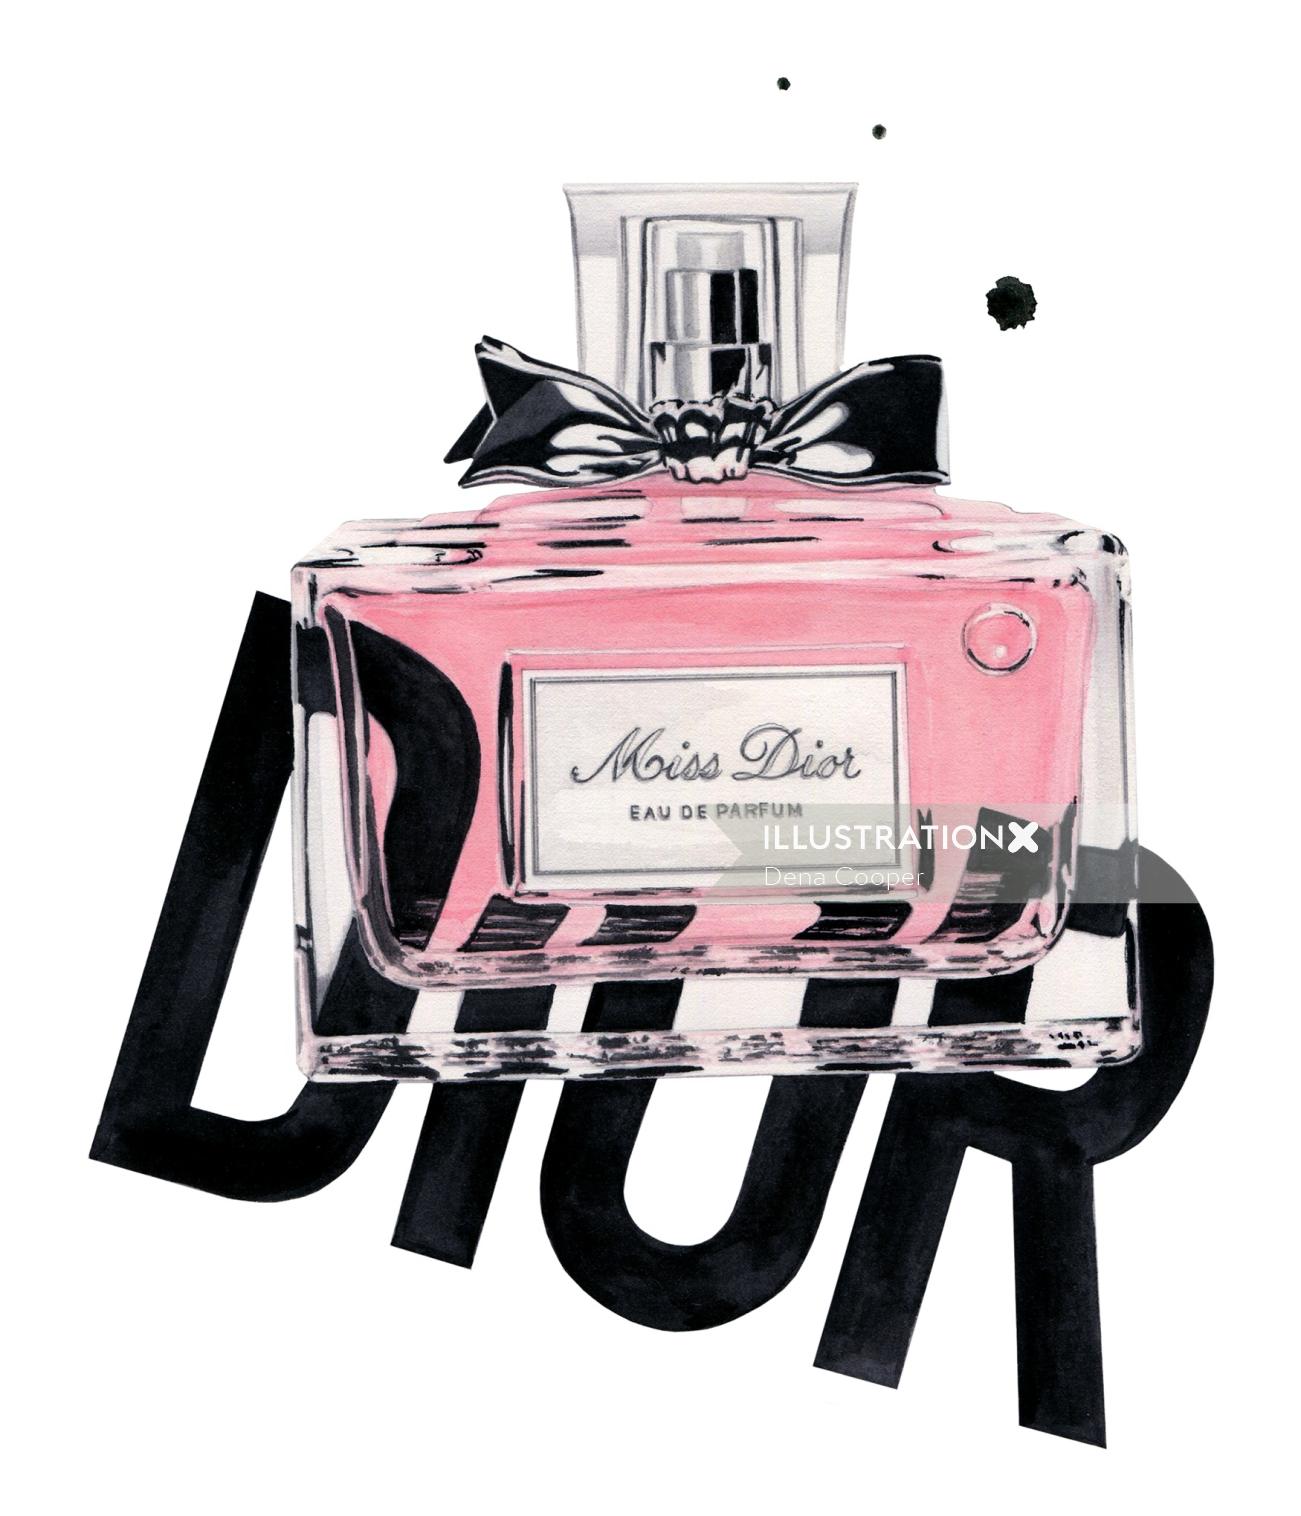 Bottle of Perfume of Miss Dior Eau De Parfum